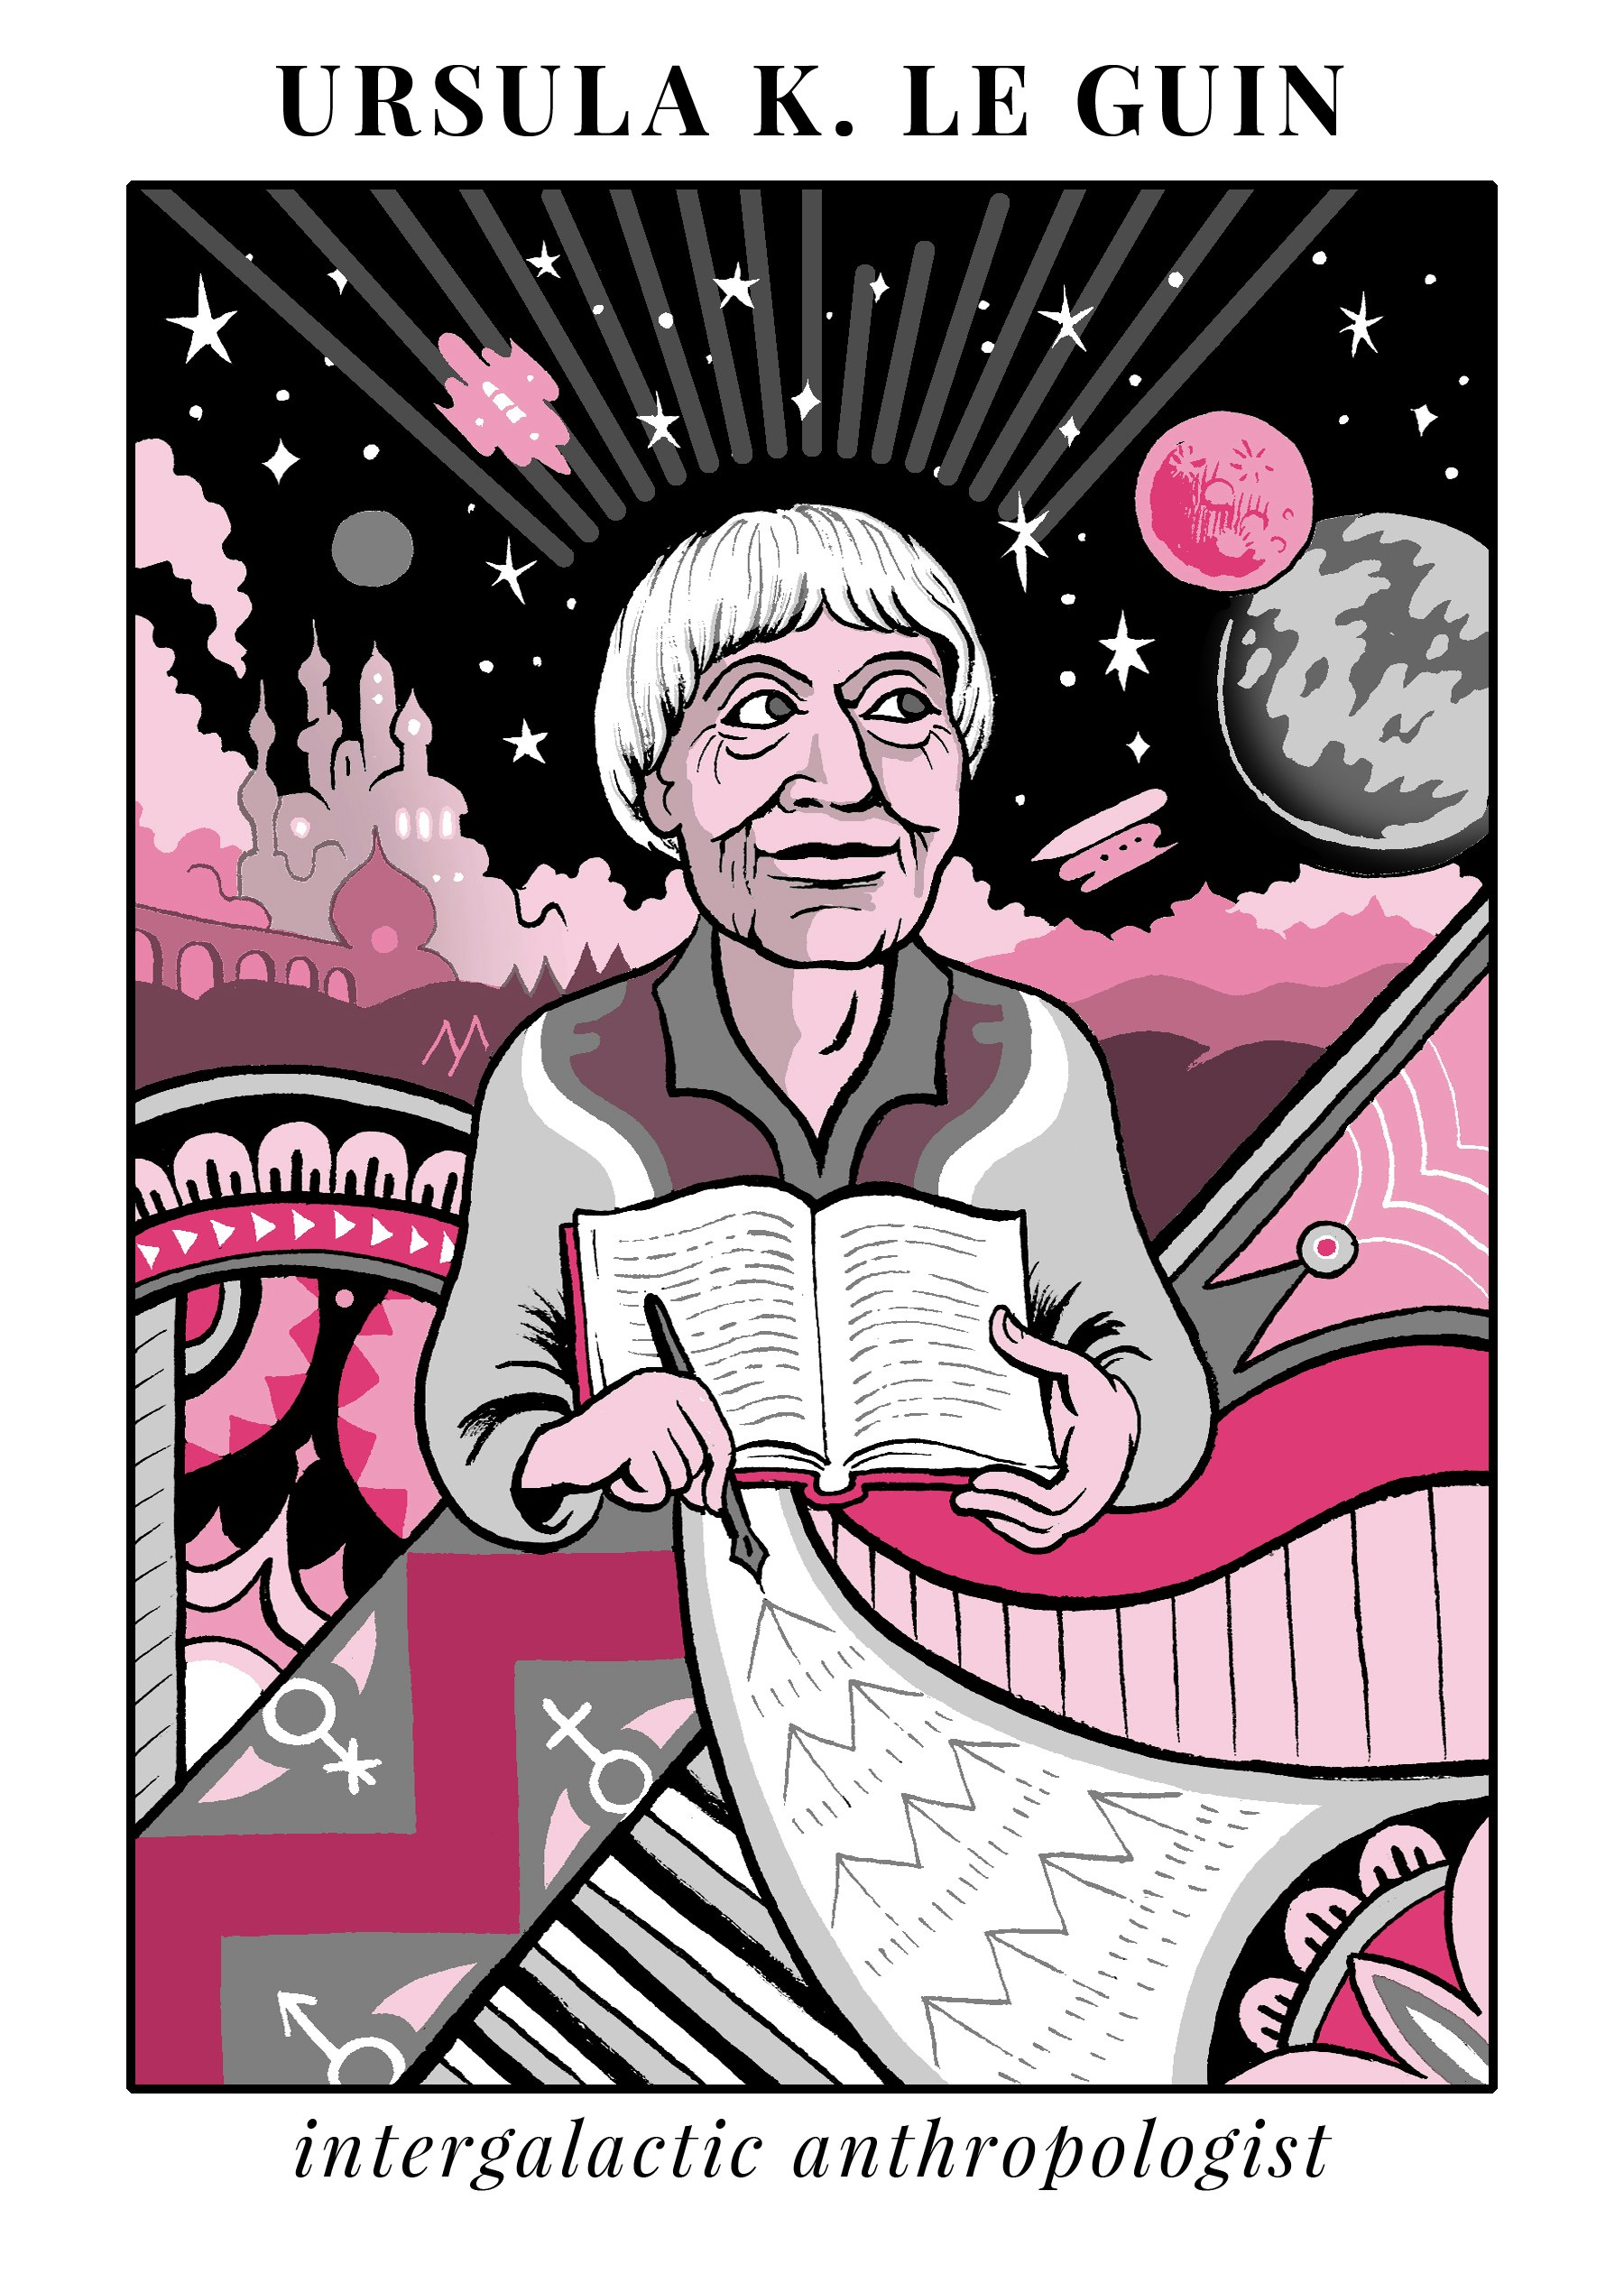 Ursula K. Le Guin illustration